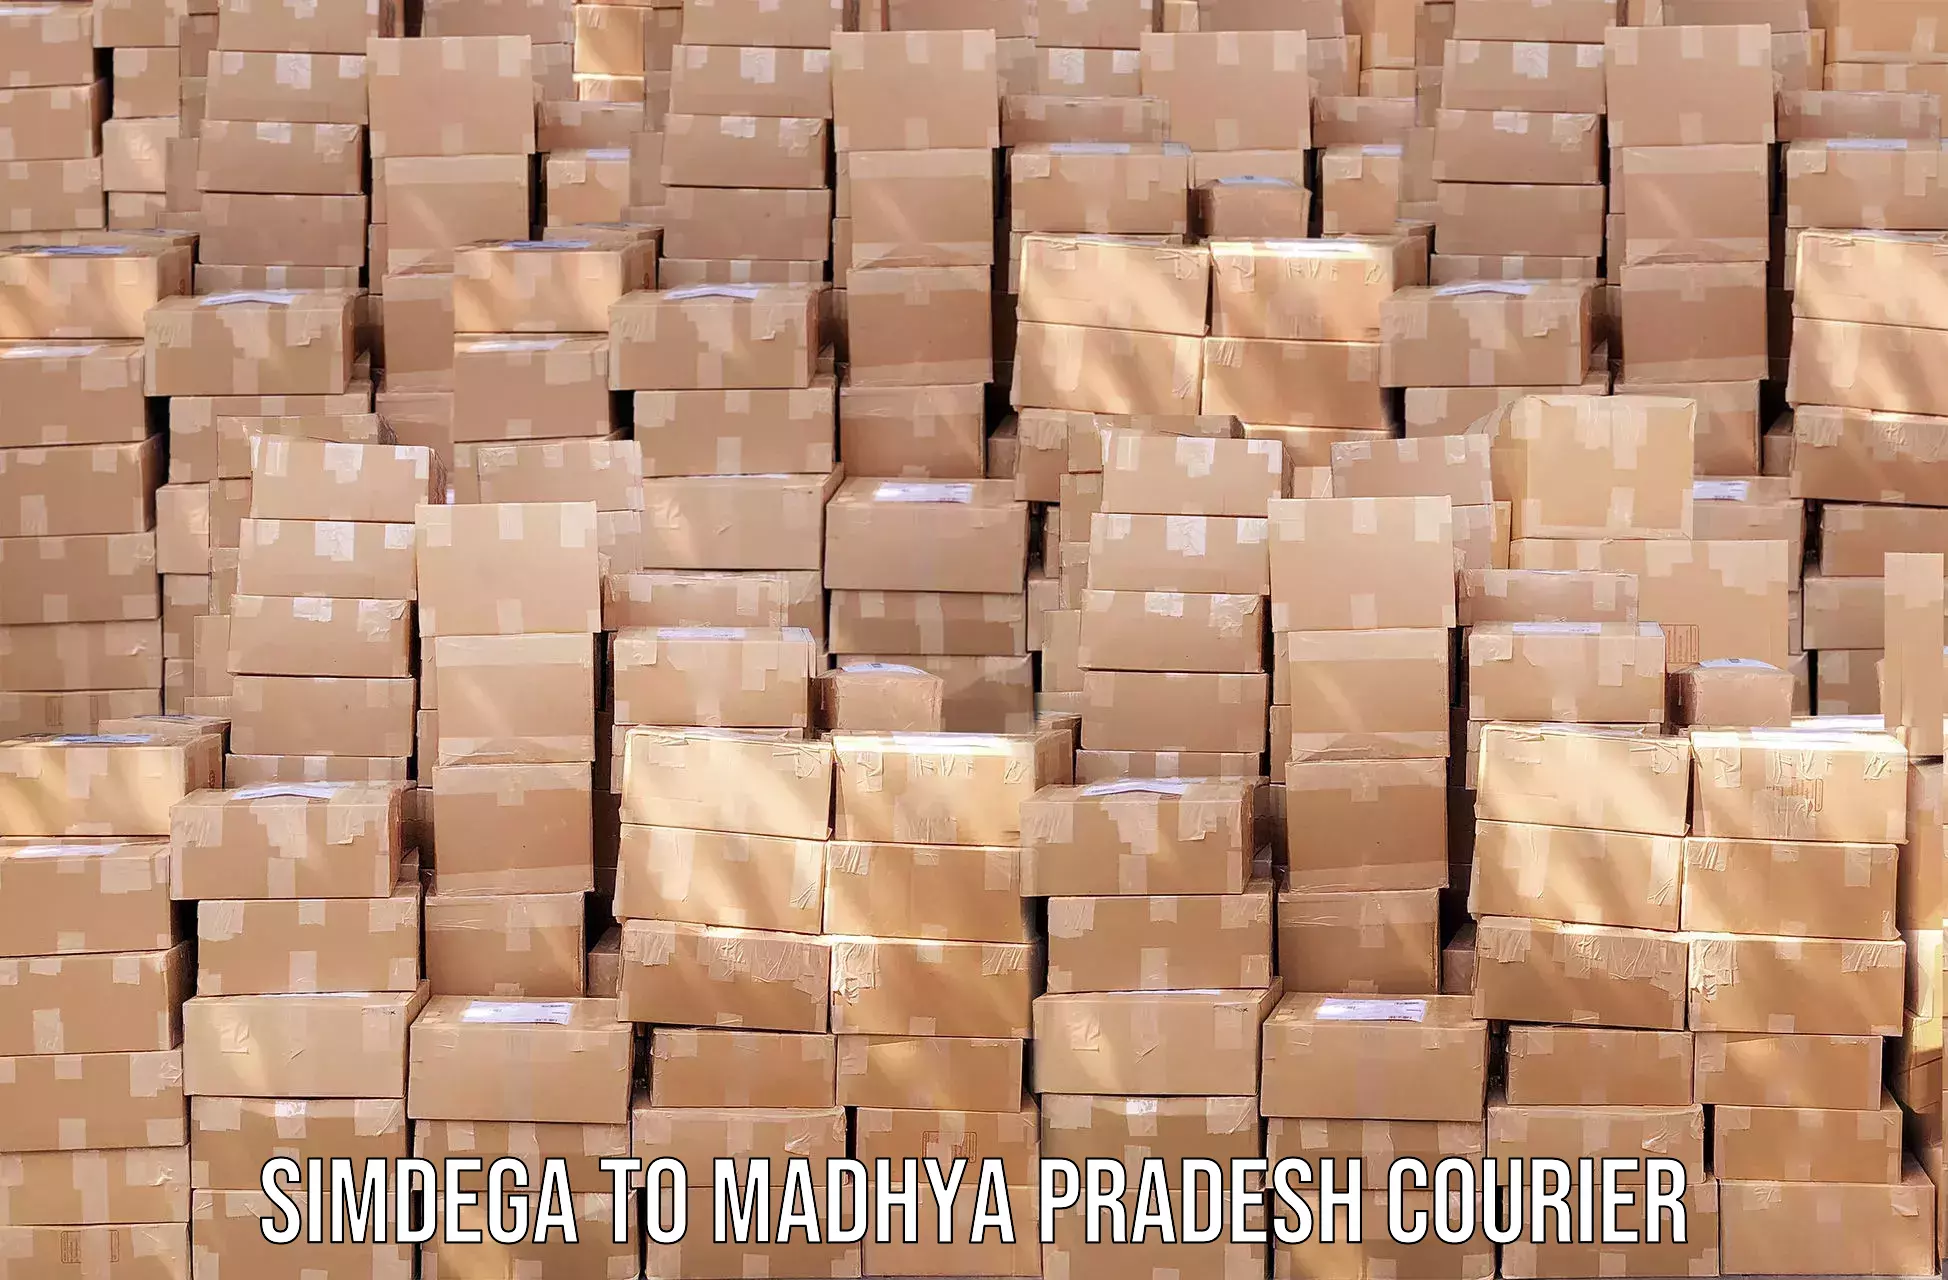 Courier service comparison Simdega to Madhya Pradesh